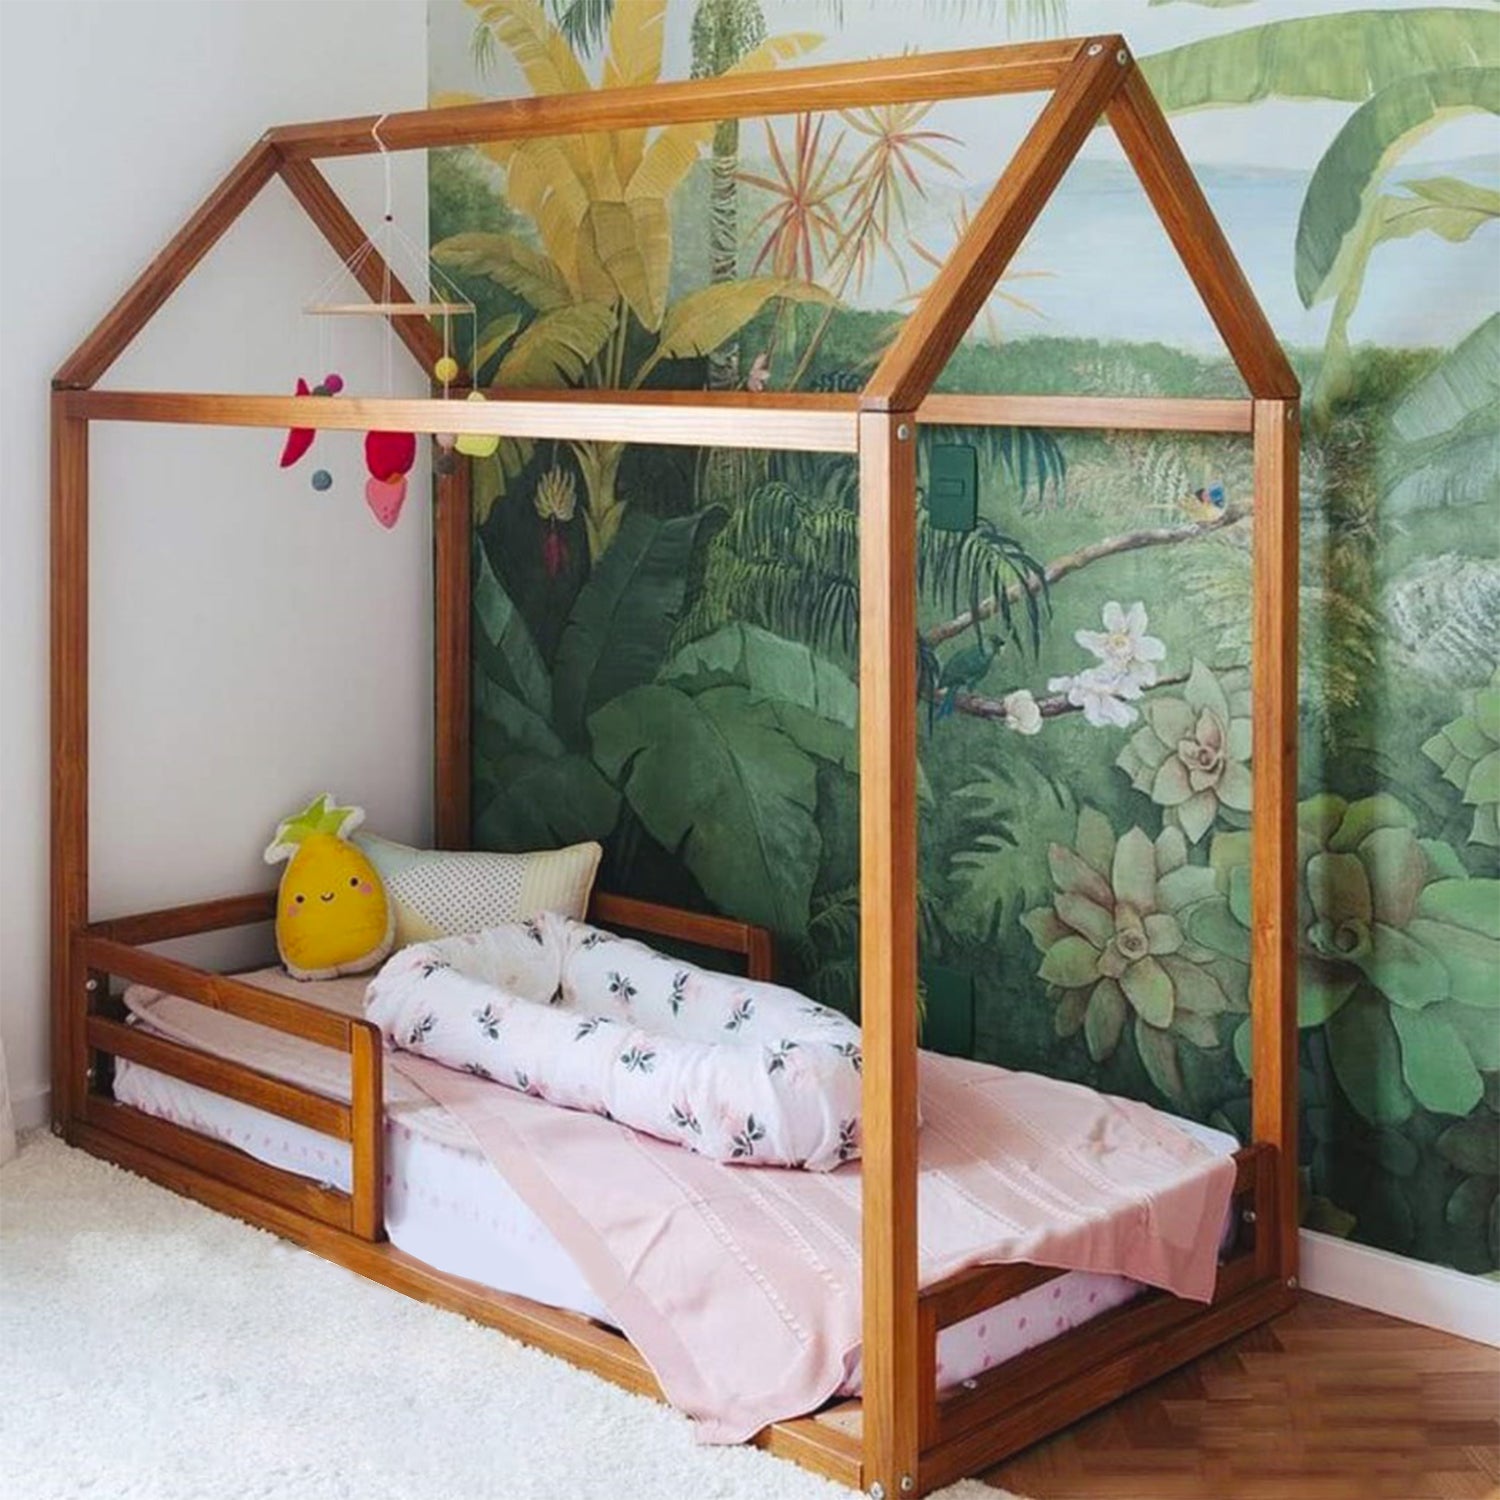 Cama Montessori en madera de pino para dormitorio infantil - Mobili Rebecca